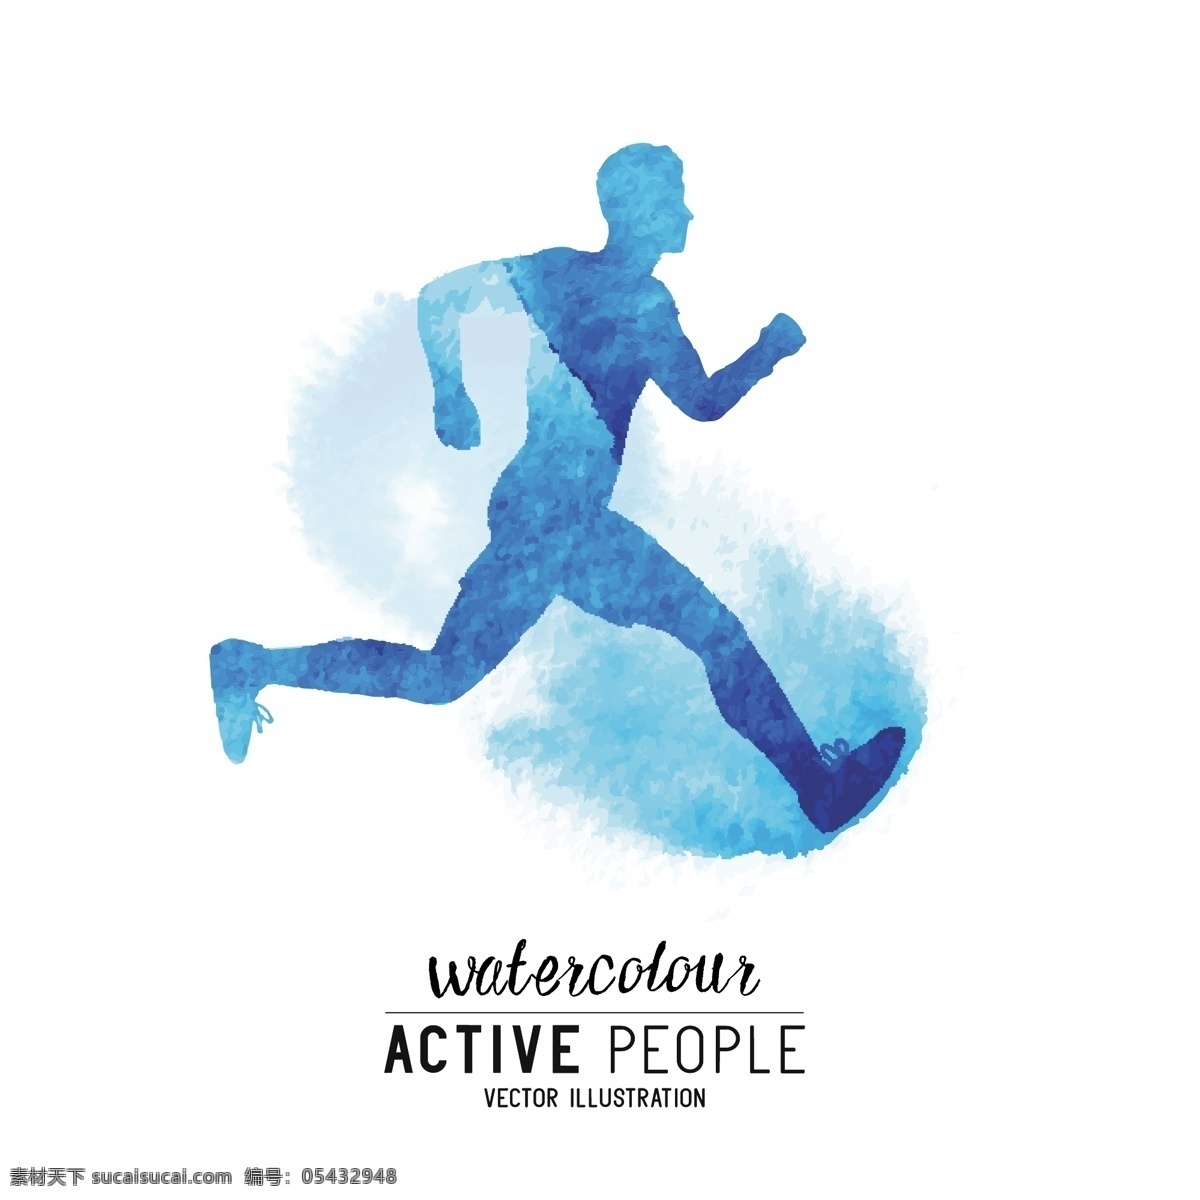 水彩跑步人物 水彩人物 人物剪影 跳跃 矢量人物剪影 彩绘人物 运动人物 跑步